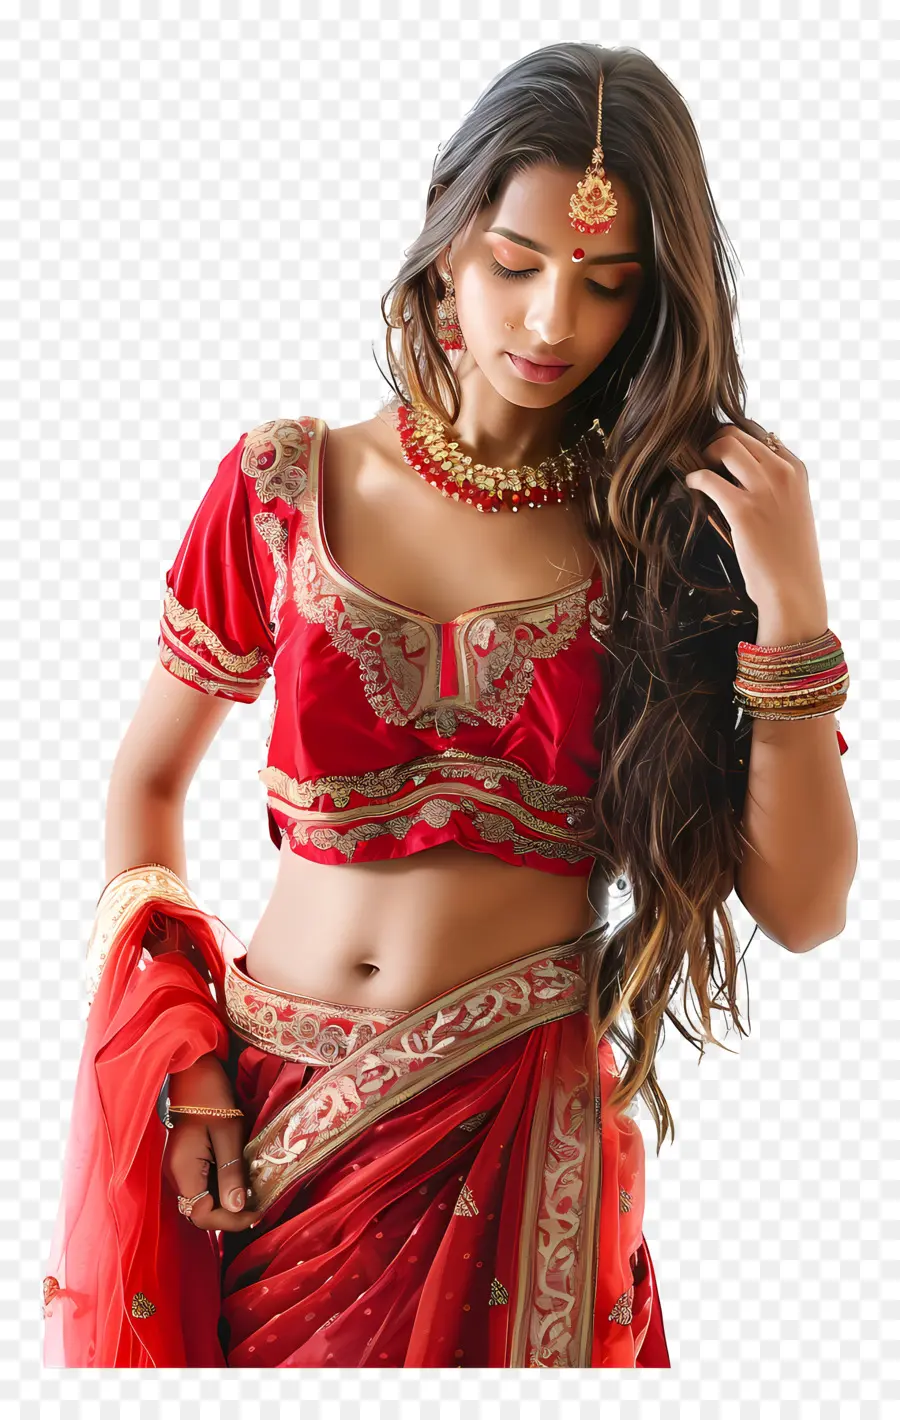 vàng biên giới - Người phụ nữ Ấn Độ mặc sari đỏ và vàng, thanh lịch